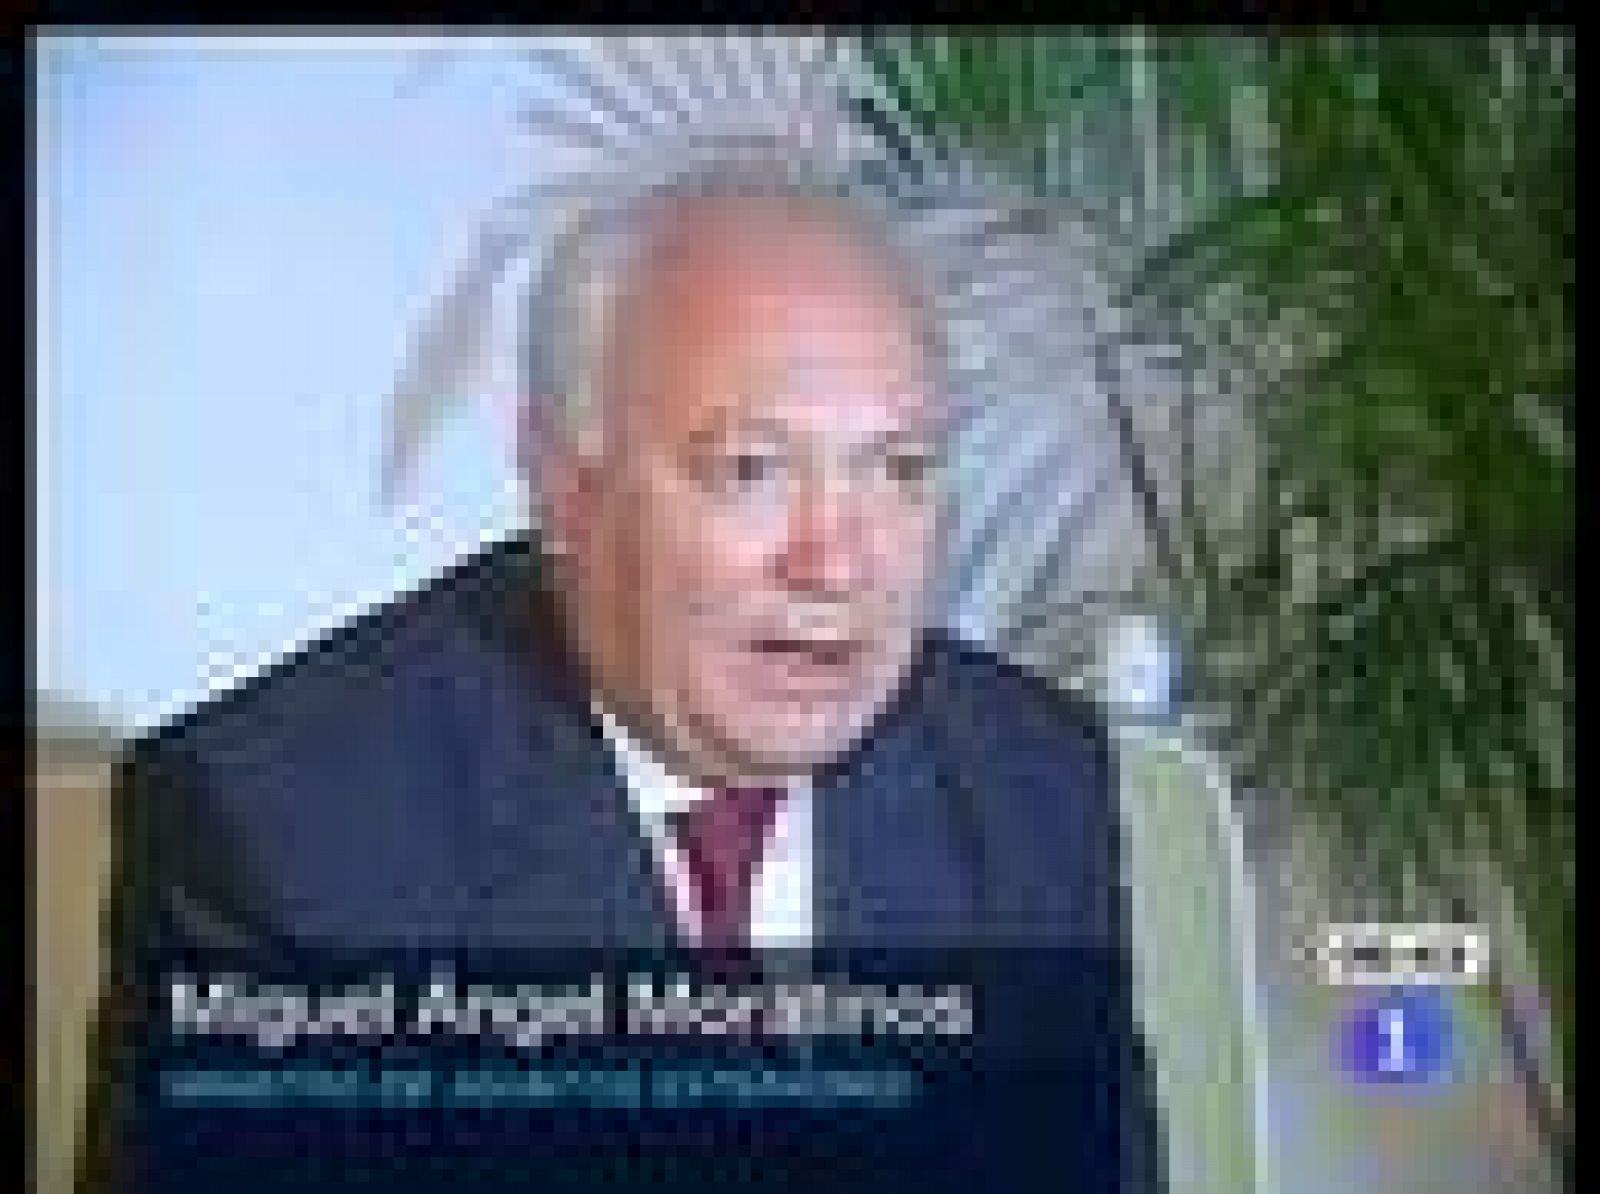 El ministro español de Exteriores, Miguel Ángel Moratinos, ha sido recibido por Raúl Castro antes de abandonar la isla en su visita oficial 